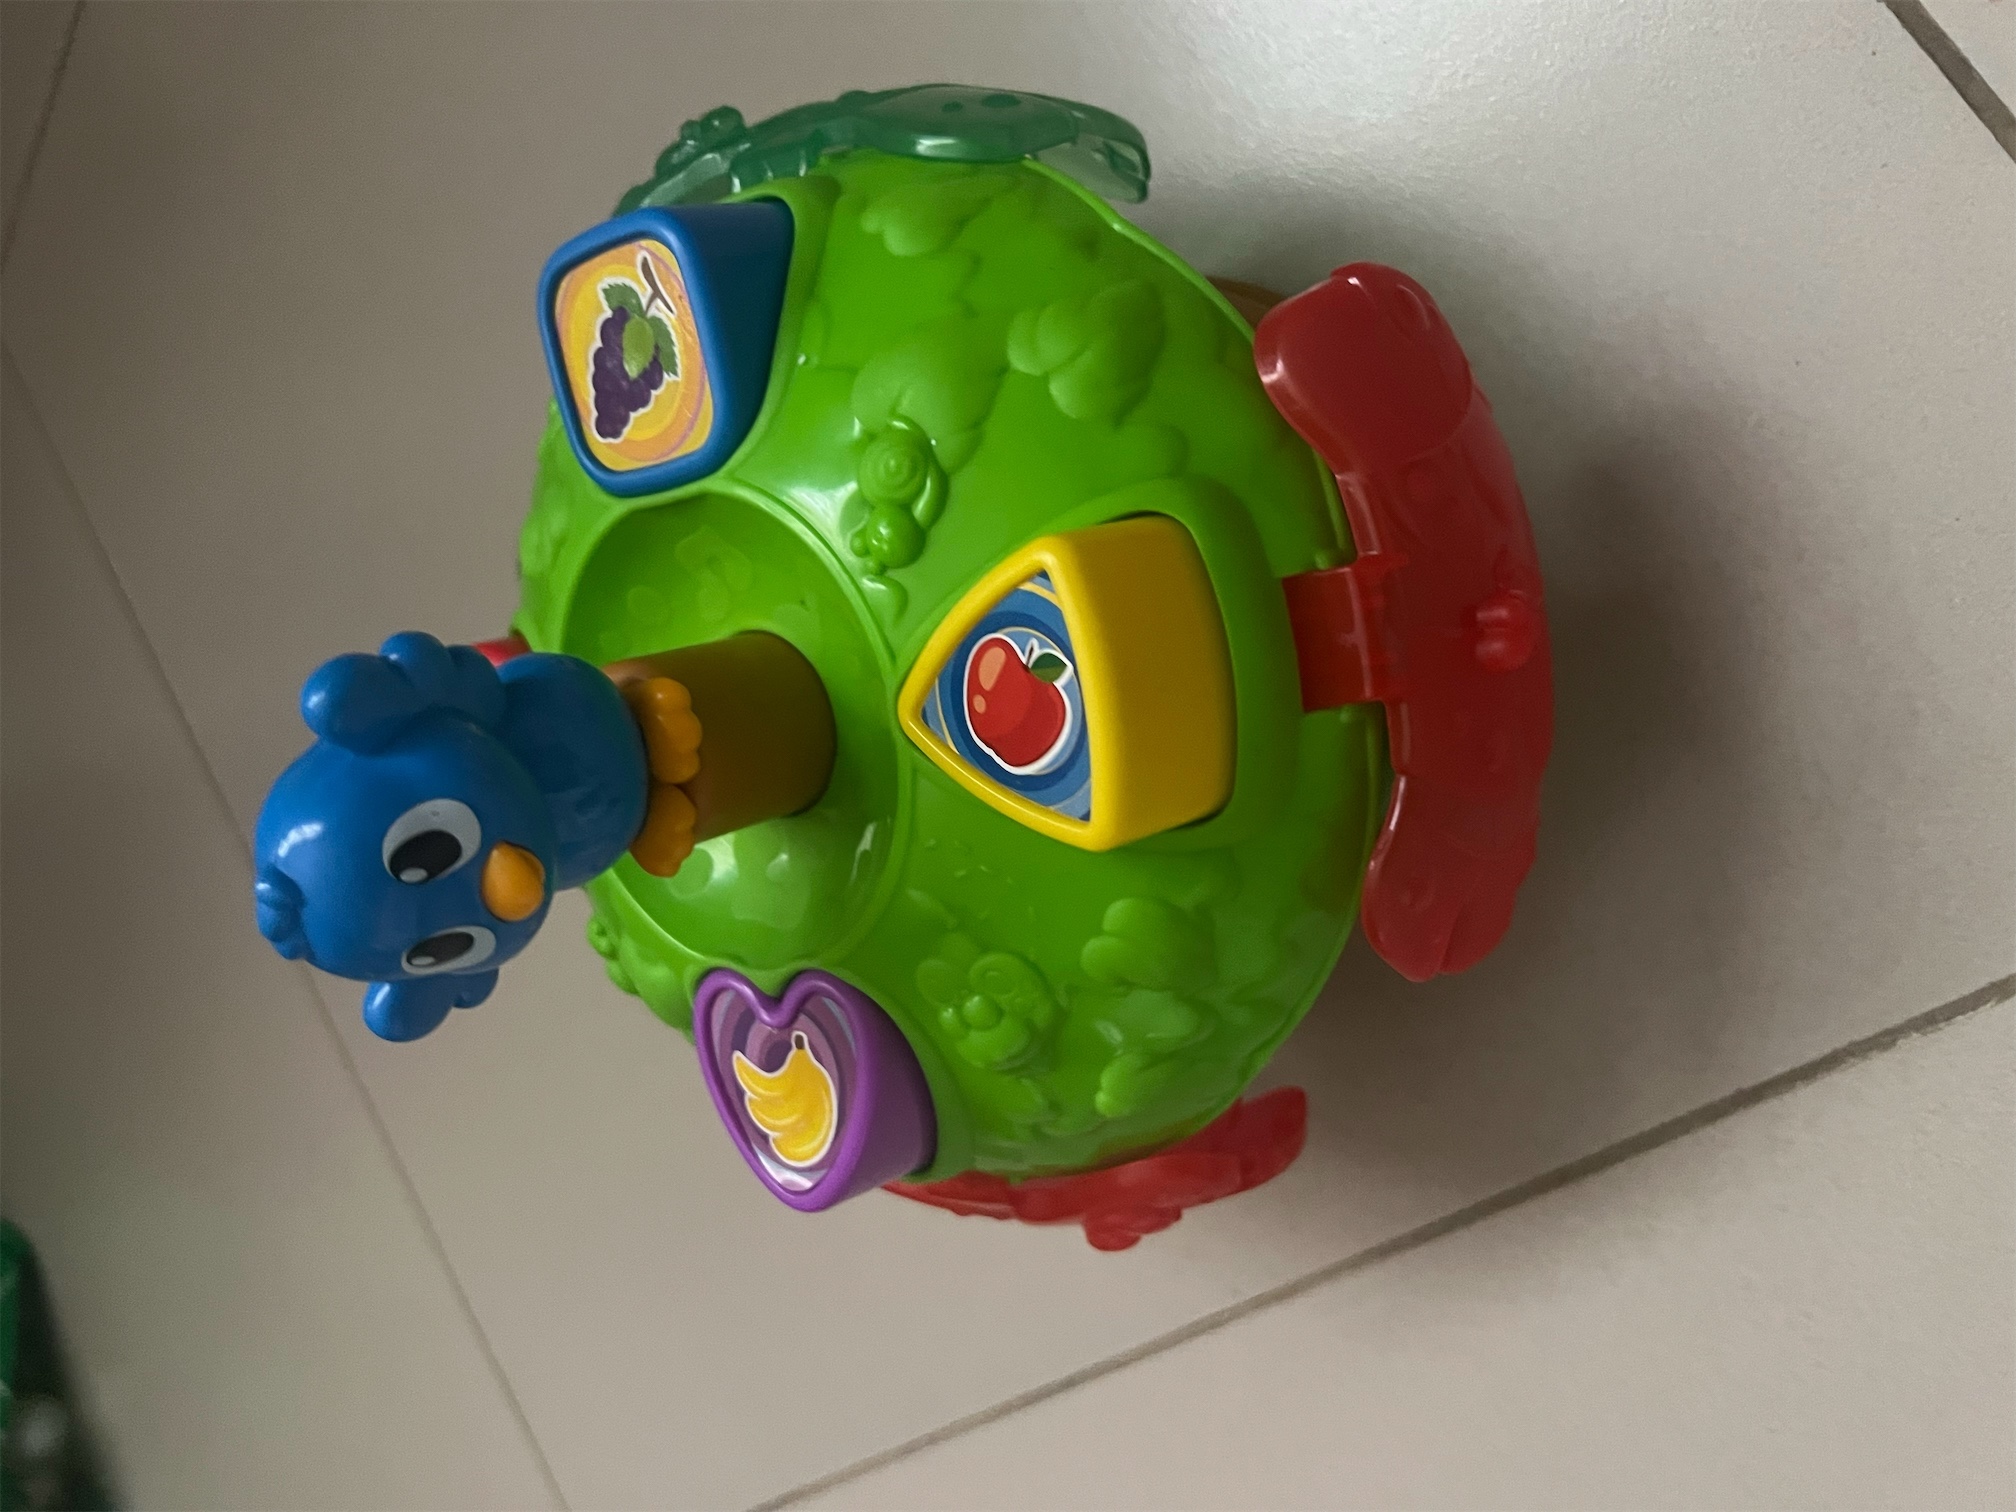 juguetes - Juguetes para niños/as de 6meses a 2 años  4